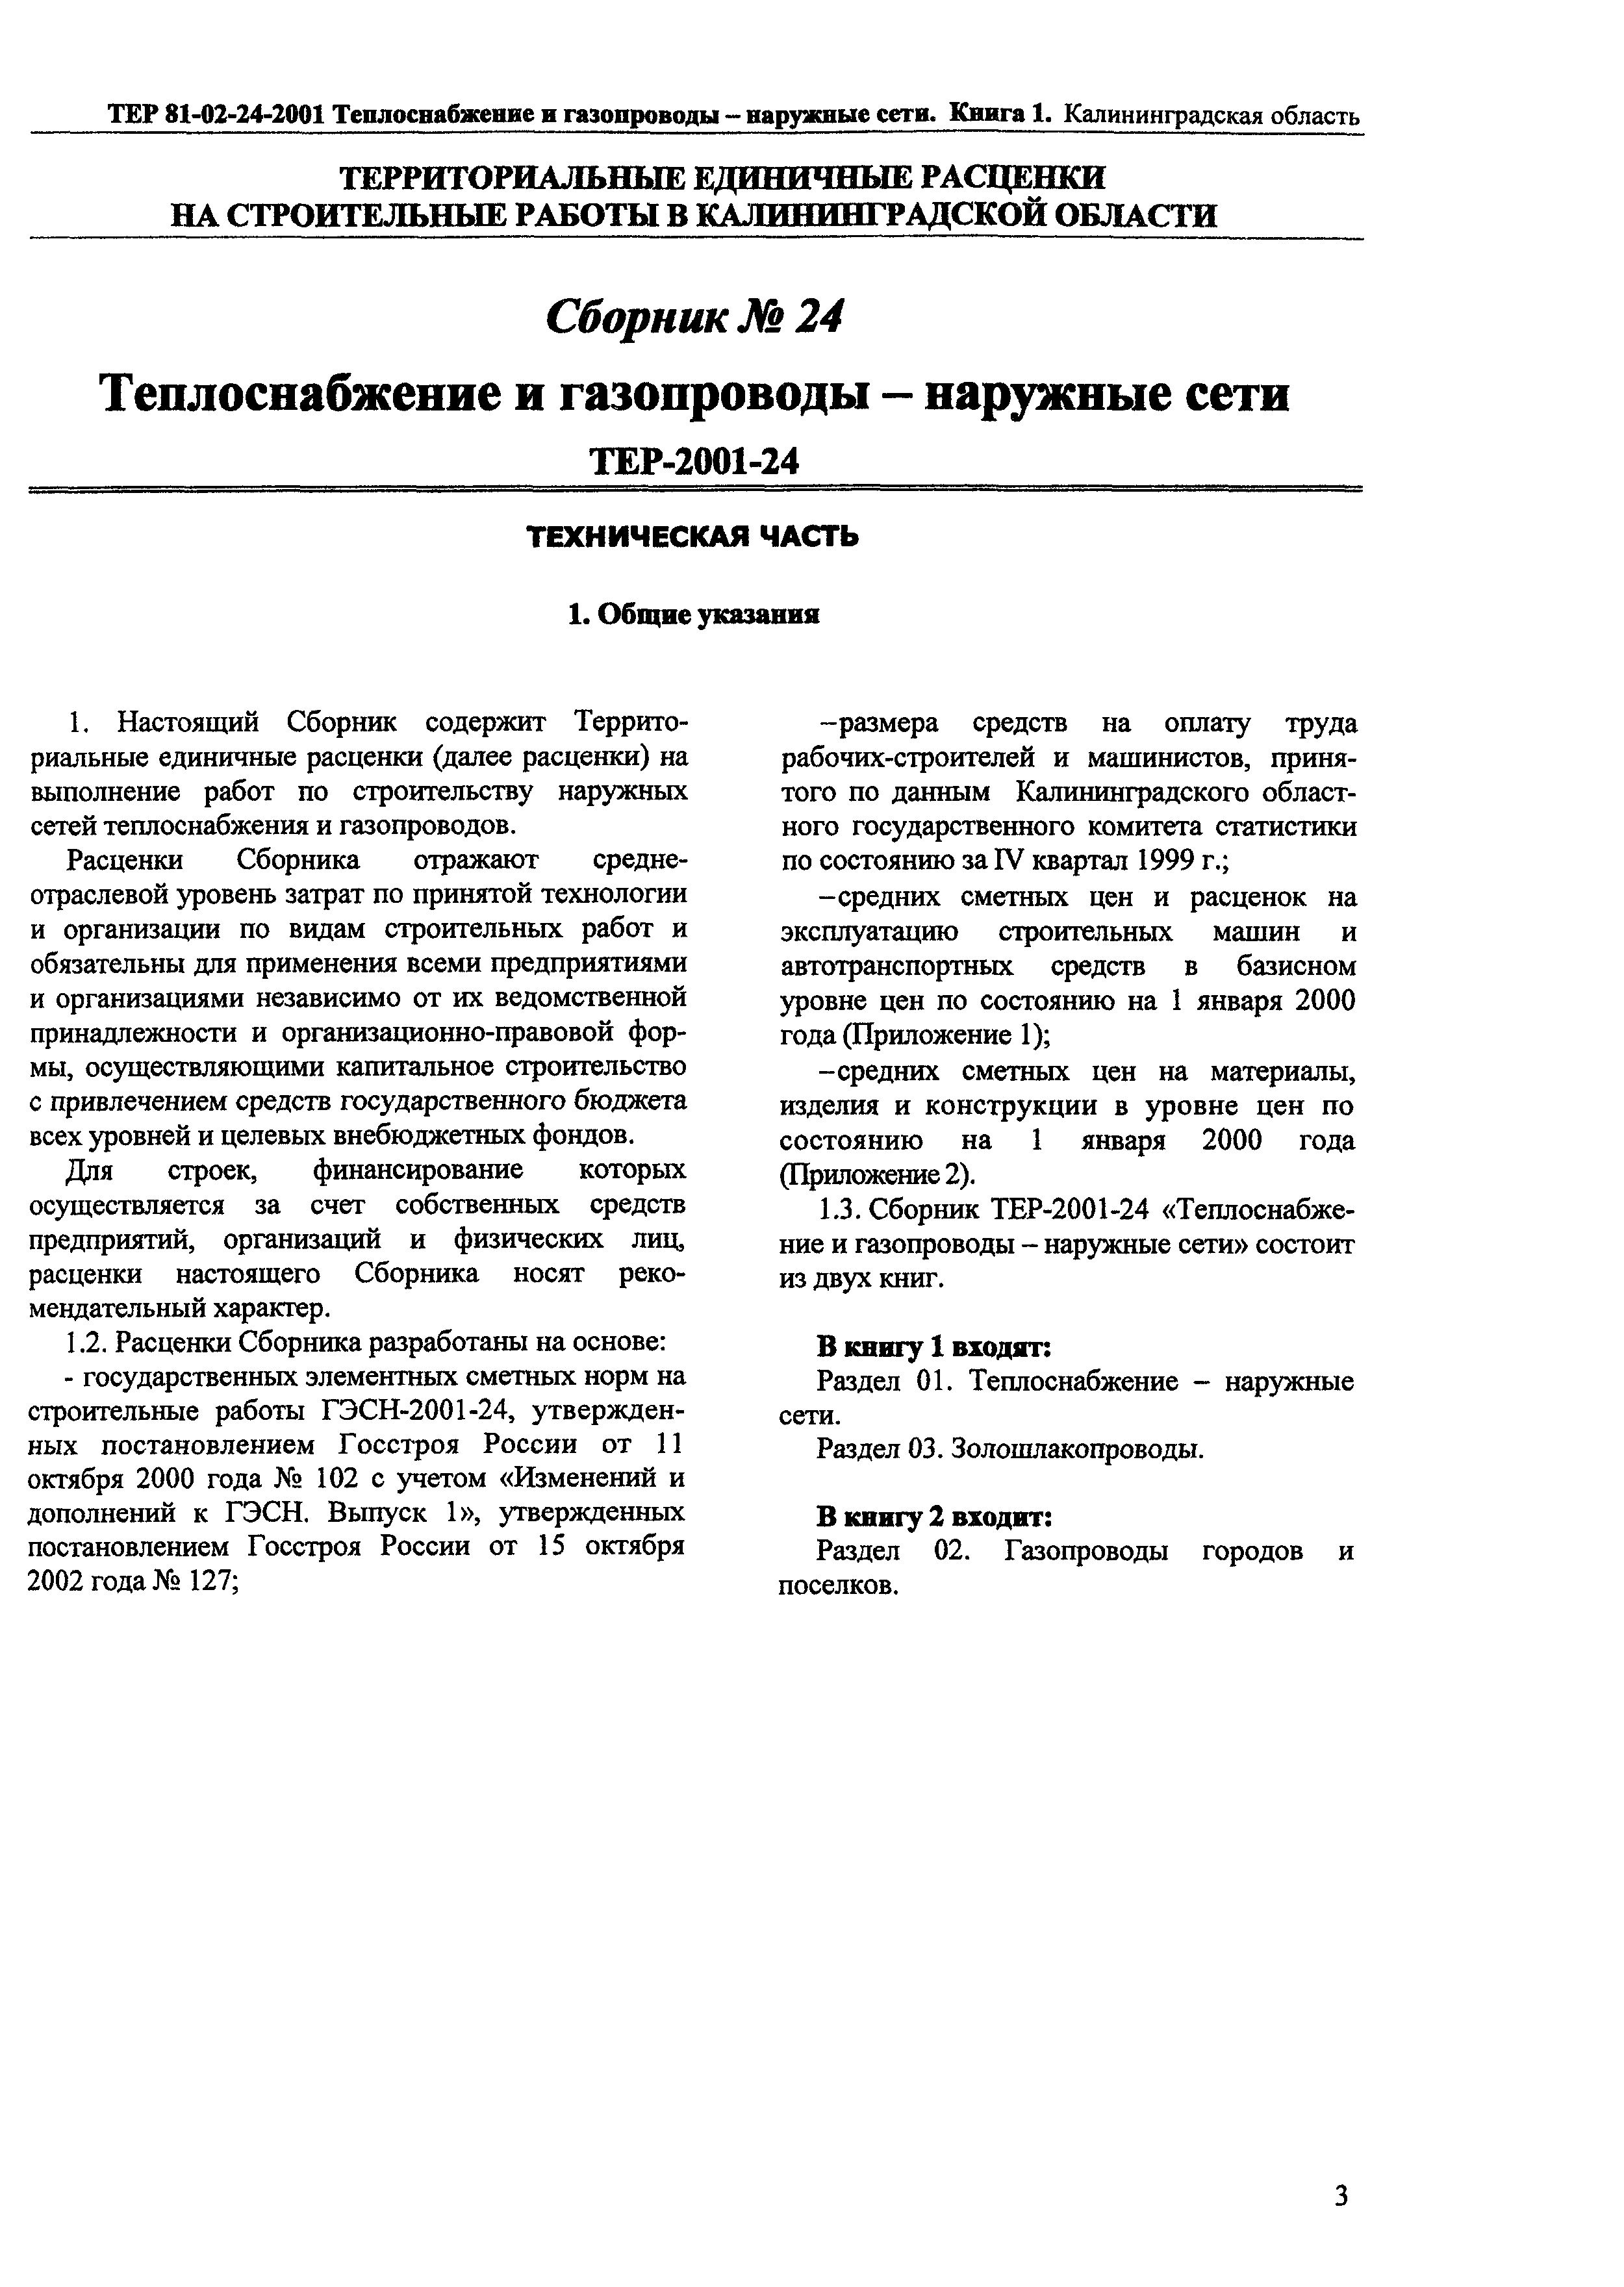 ТЕР Калининградской области 2001-24